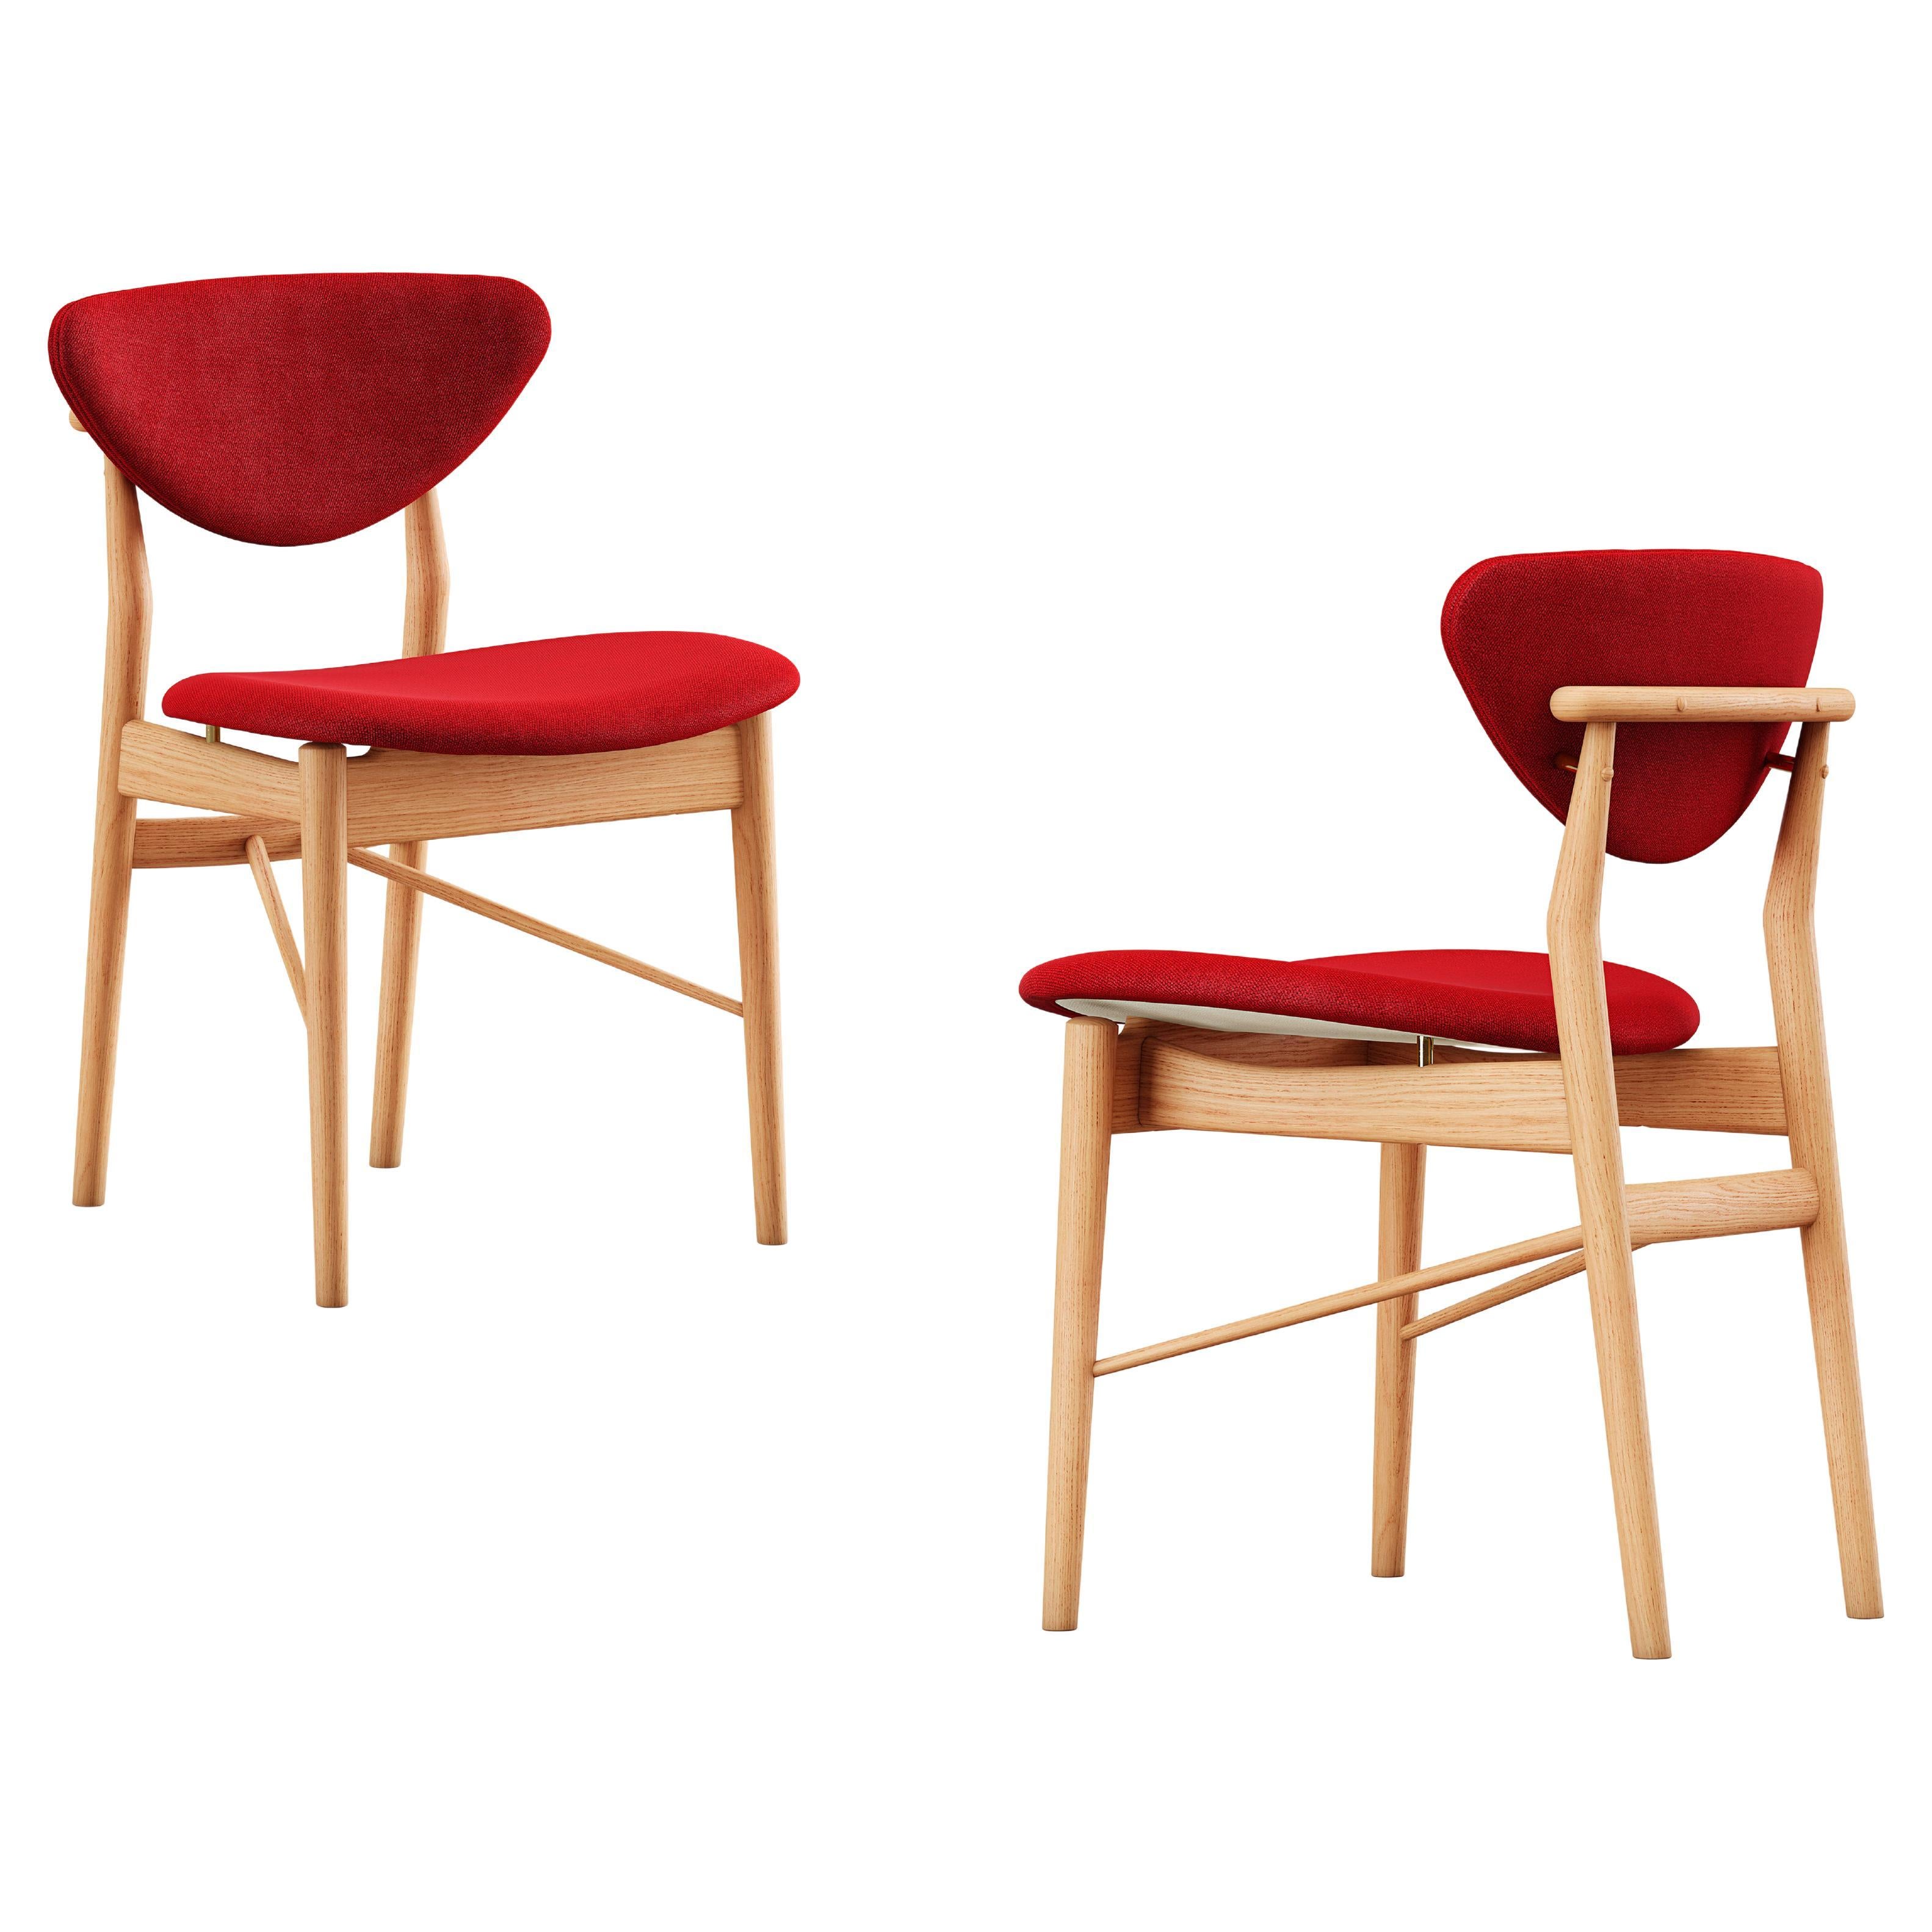 Set of Two Finn Juhl 108 Chair by House of Finn Juhl